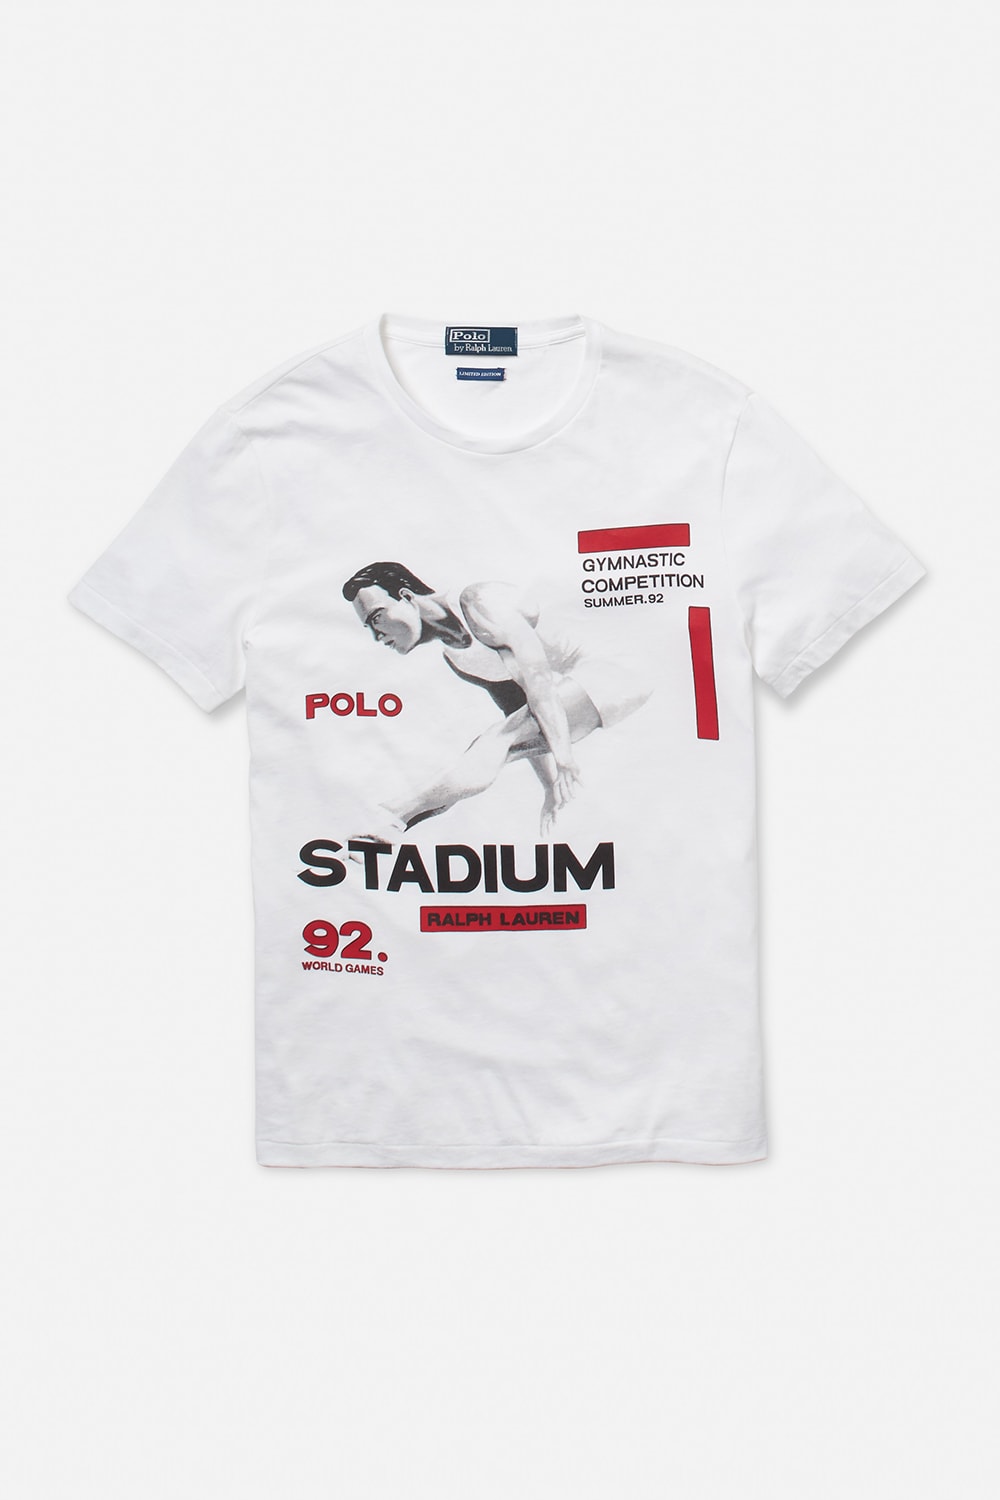 랄프 로렌 폴로 스타디움 컬렉션 한정판 2017 ralph lauren polo stadium collection limited edition